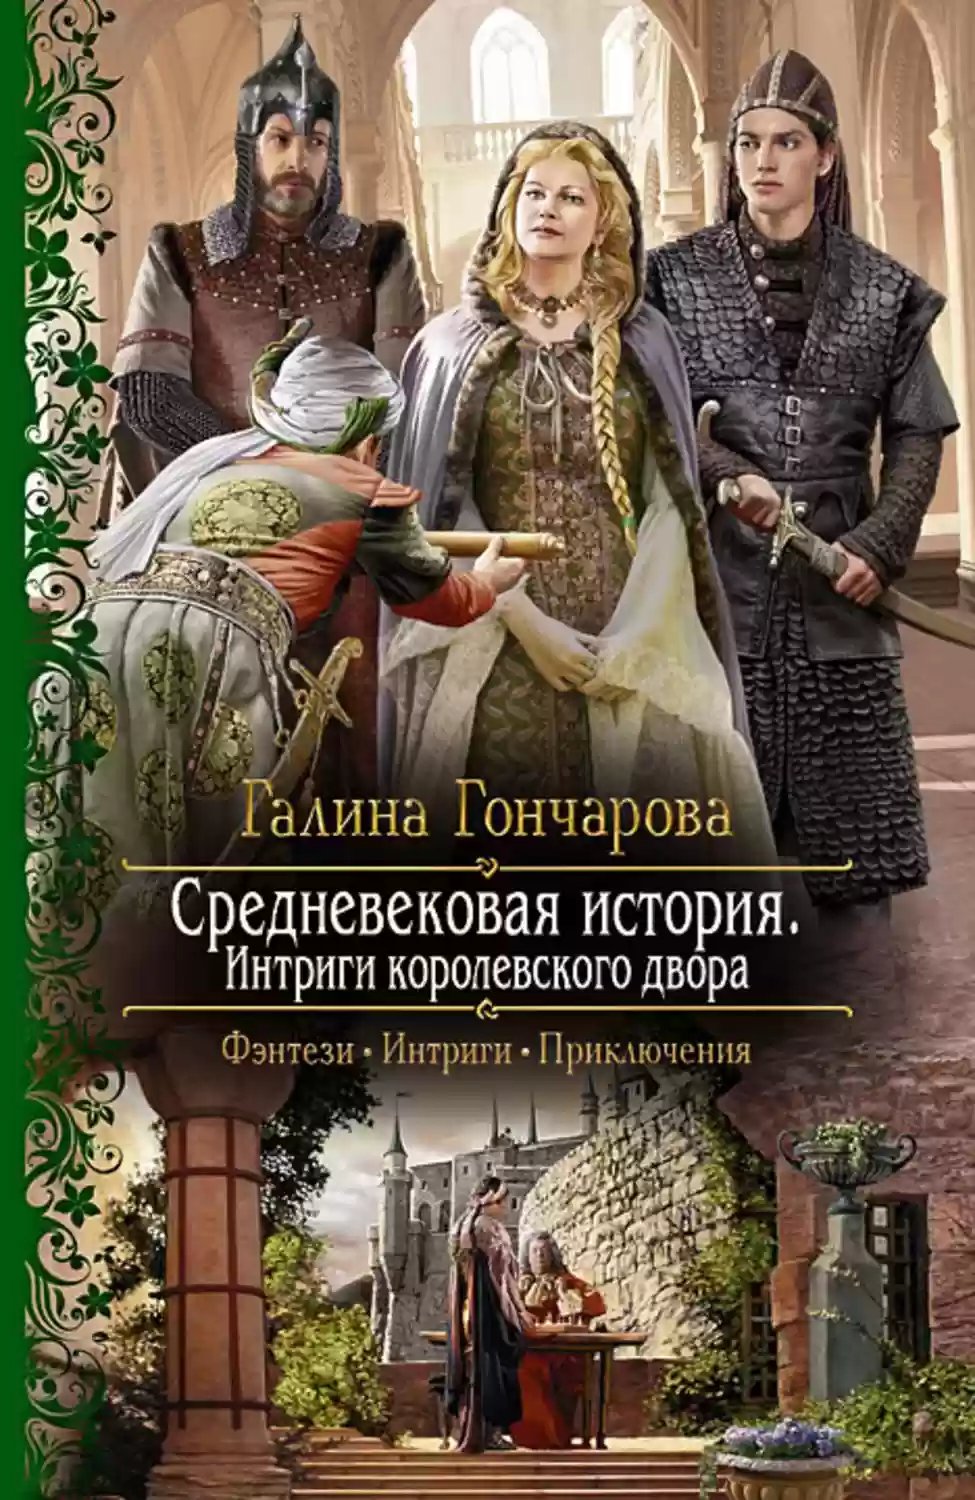 Граф и его Графиня - обложка книги